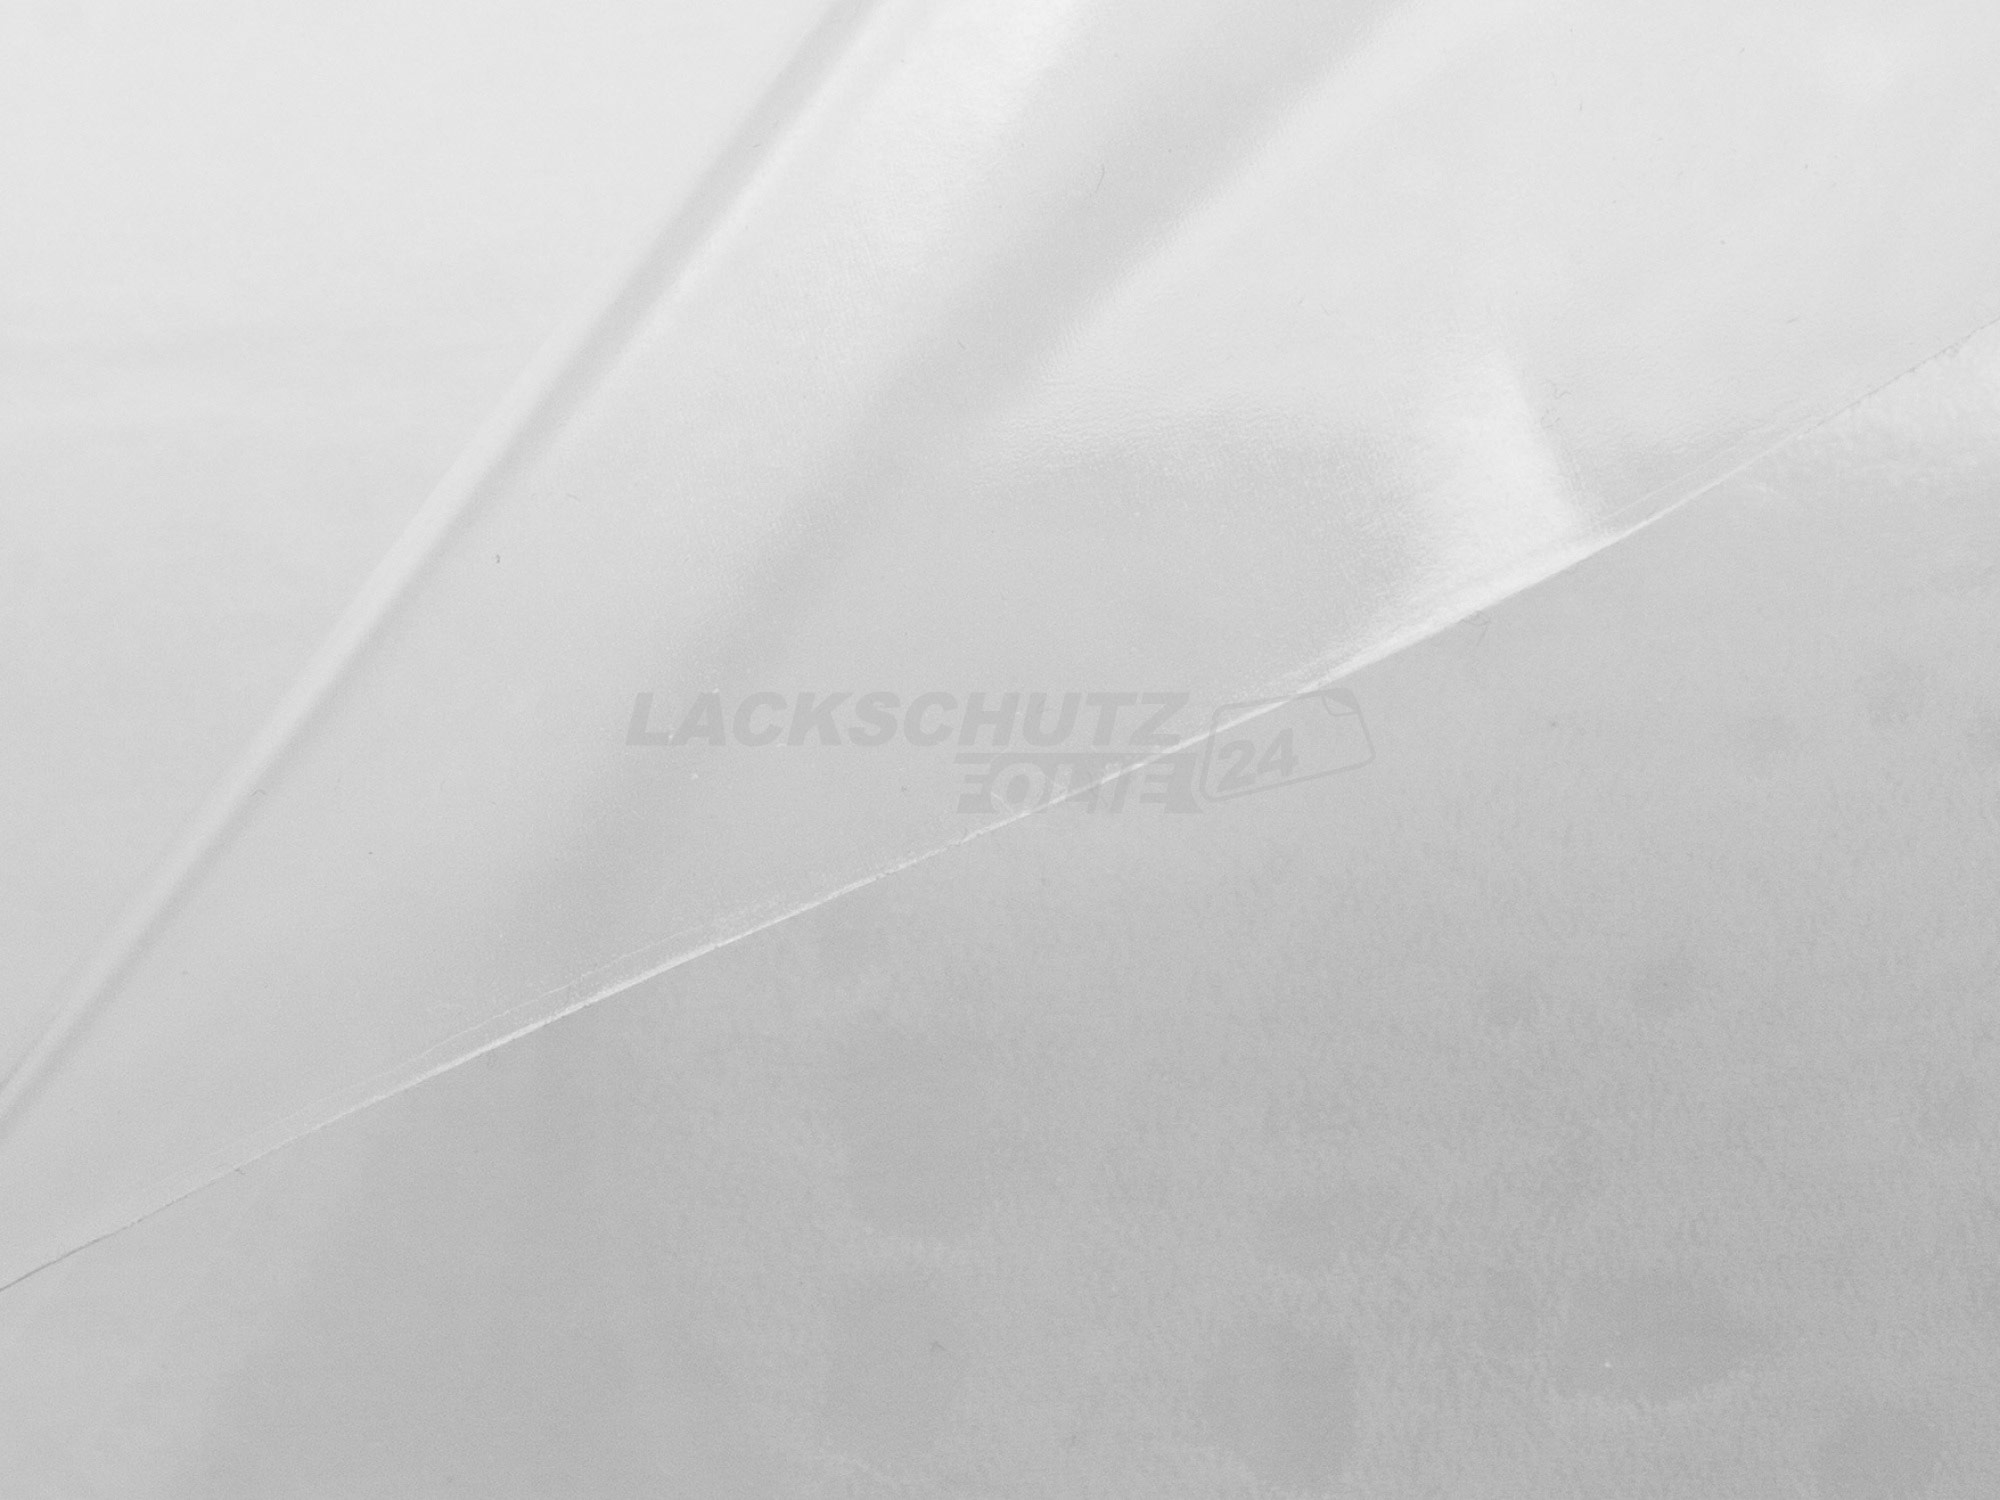 Ladekantenschutzfolie - Transparent Glatt Hochglänzend 150 µm stark für BMW 2er Coupe Typ F22, BJ 11/2013-2021